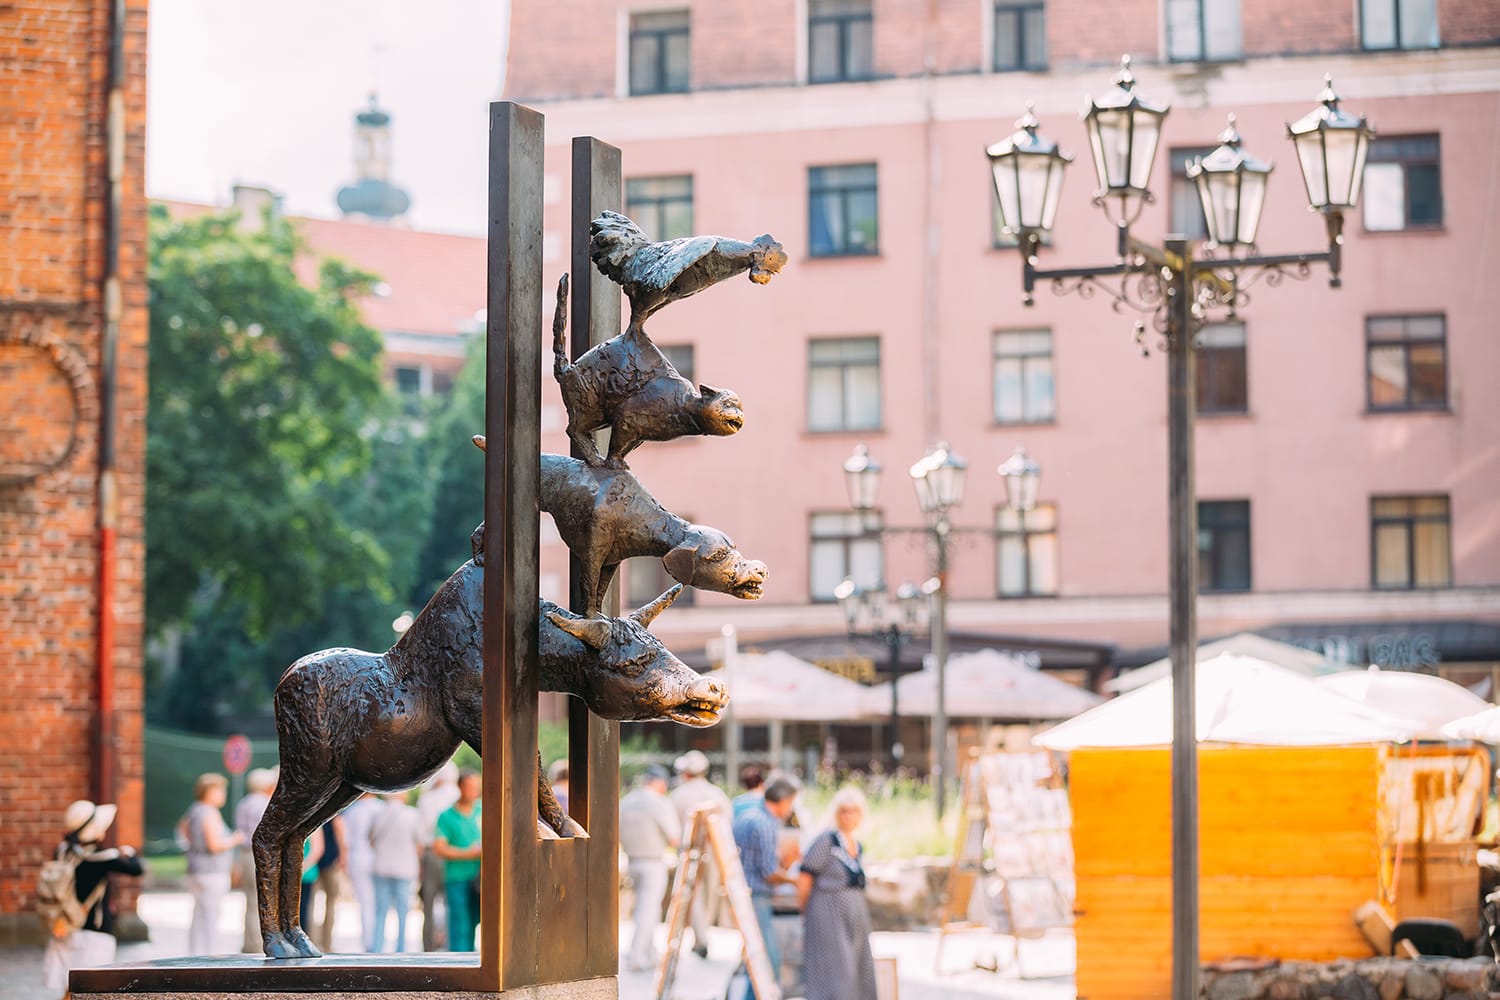 Χάλκινο άγαλμα που απεικονίζει τους μουσικούς της πόλης της Βρέμης που βρίσκεται στη Ρίγα της Λετονίας.